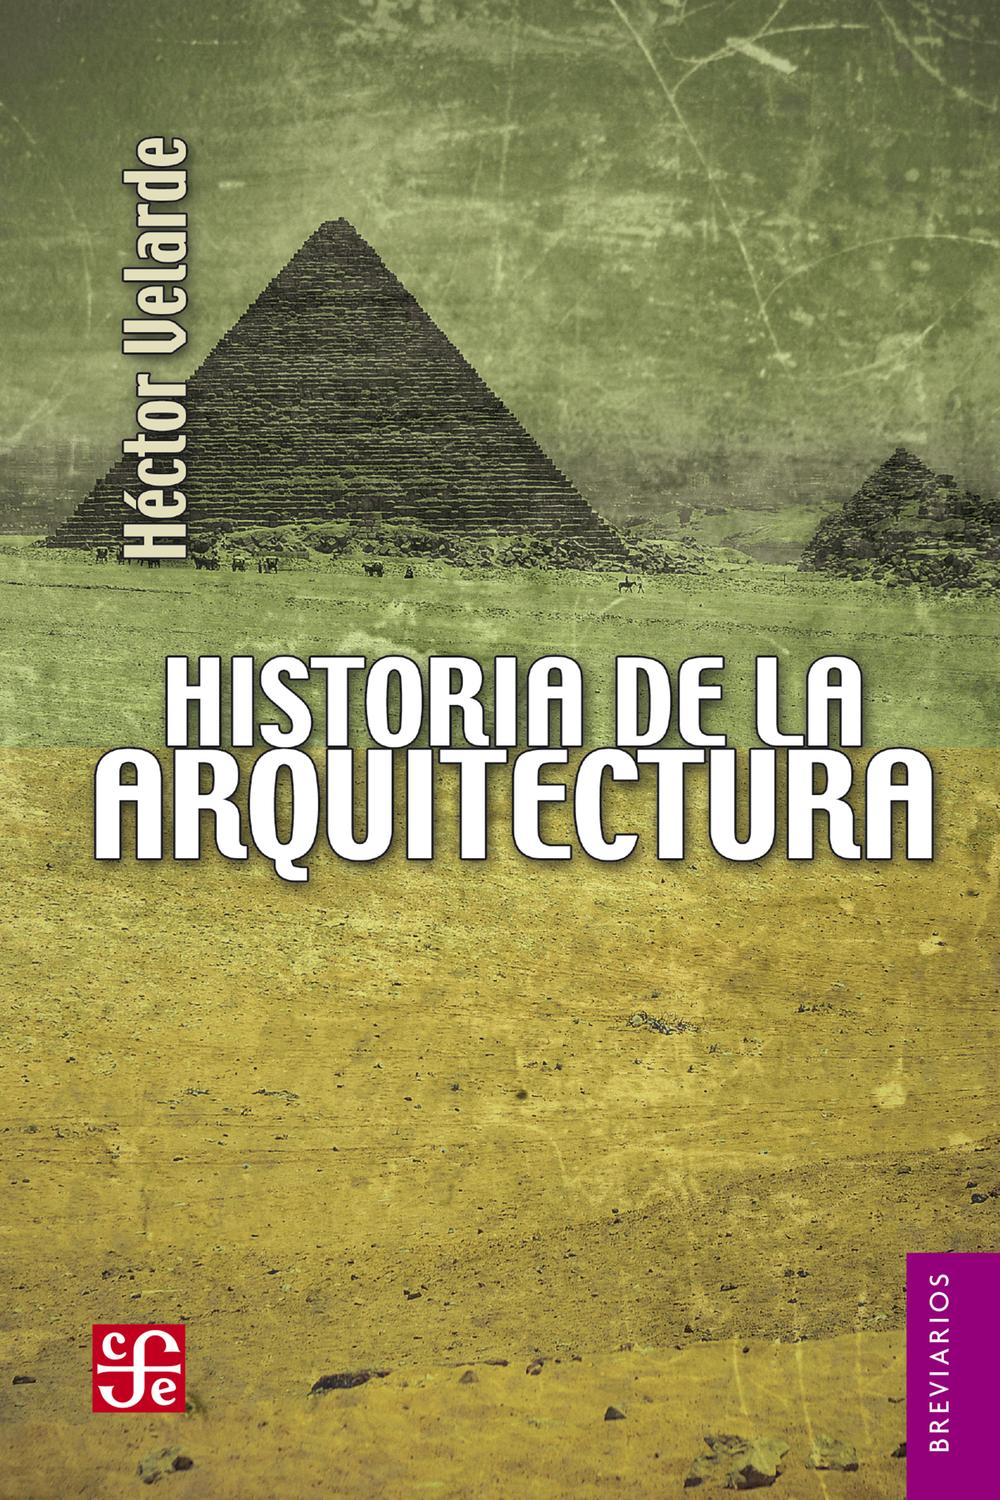 Historia de la arquitectura - Héctor Velarde, Ricardo Malachowski B.